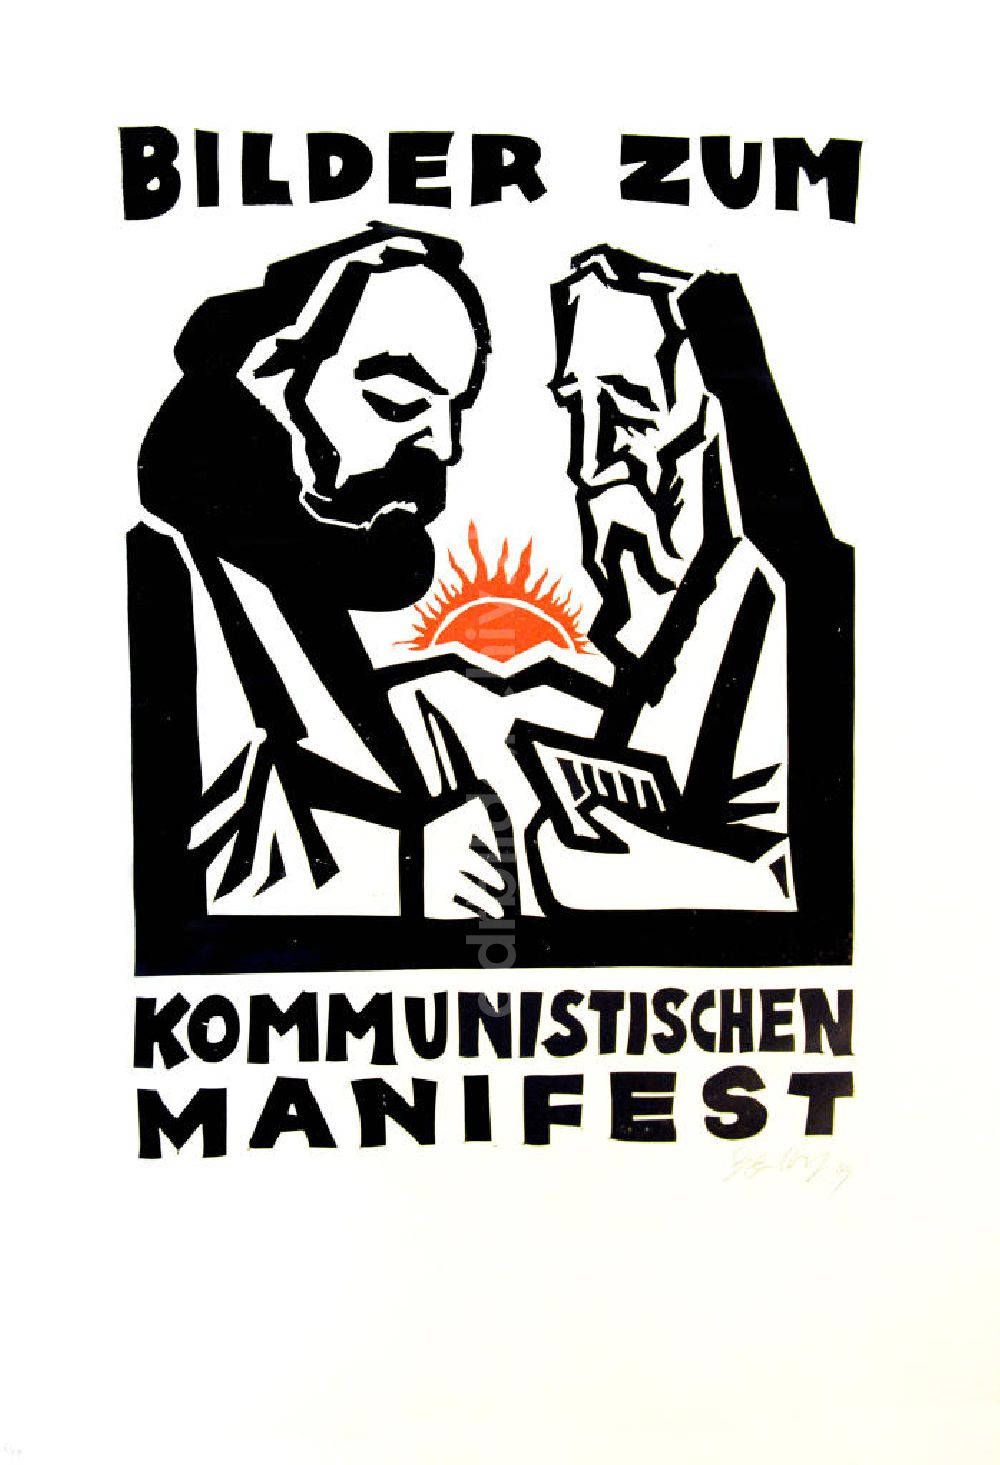 DDR-Fotoarchiv: Berlin - Grafik von Herbert Sandberg Motiv 1/Titelblatt aus dem Zyklus Bilder zum Kommunistischen Manifest aus dem Jahr 1969